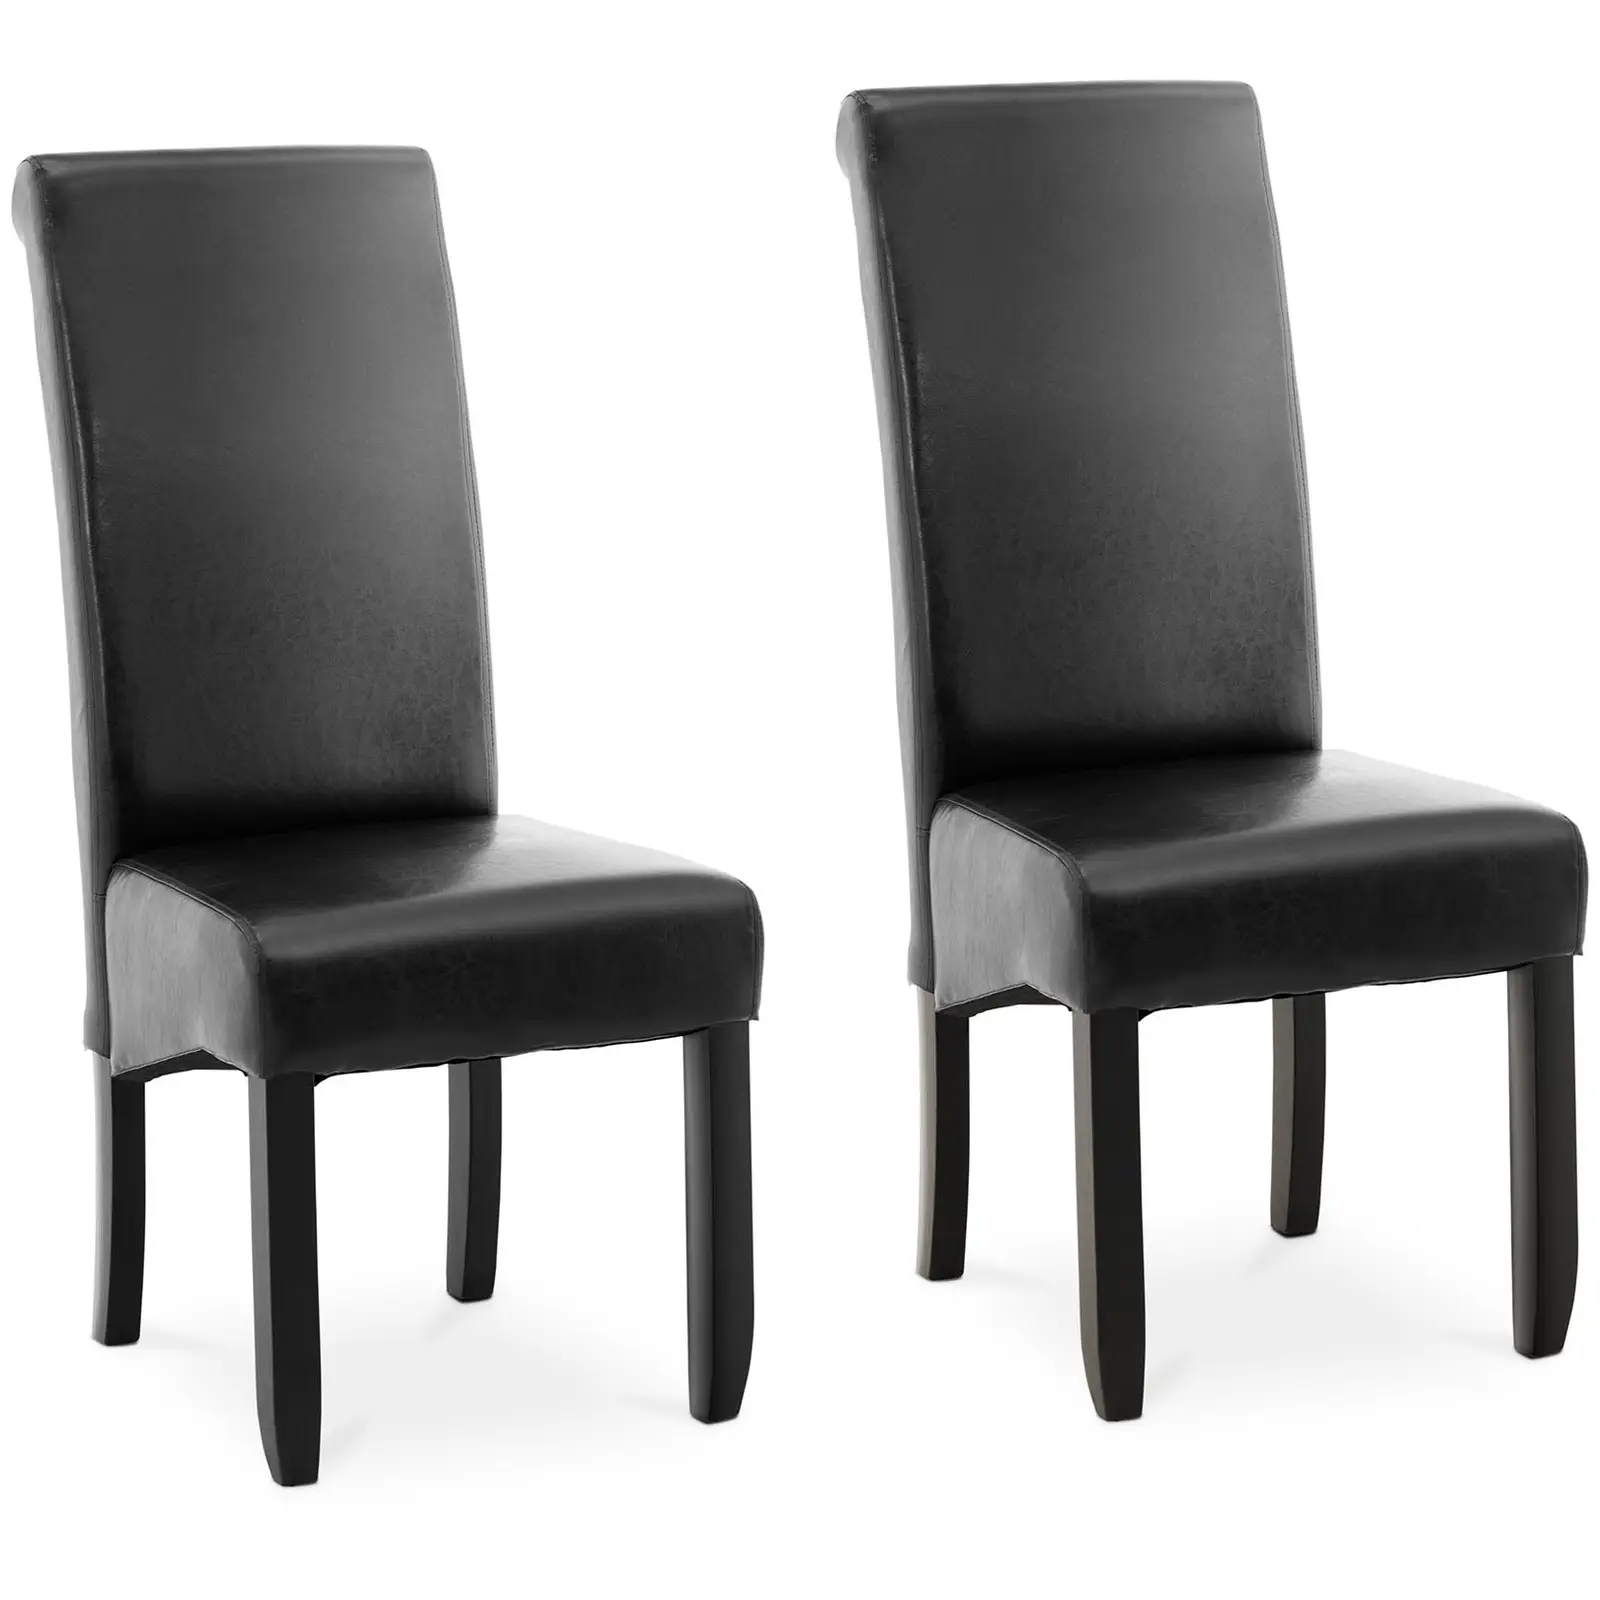 Produtos recondicionados Cadeira estofada - em preto - couro ecológico - 2 un.